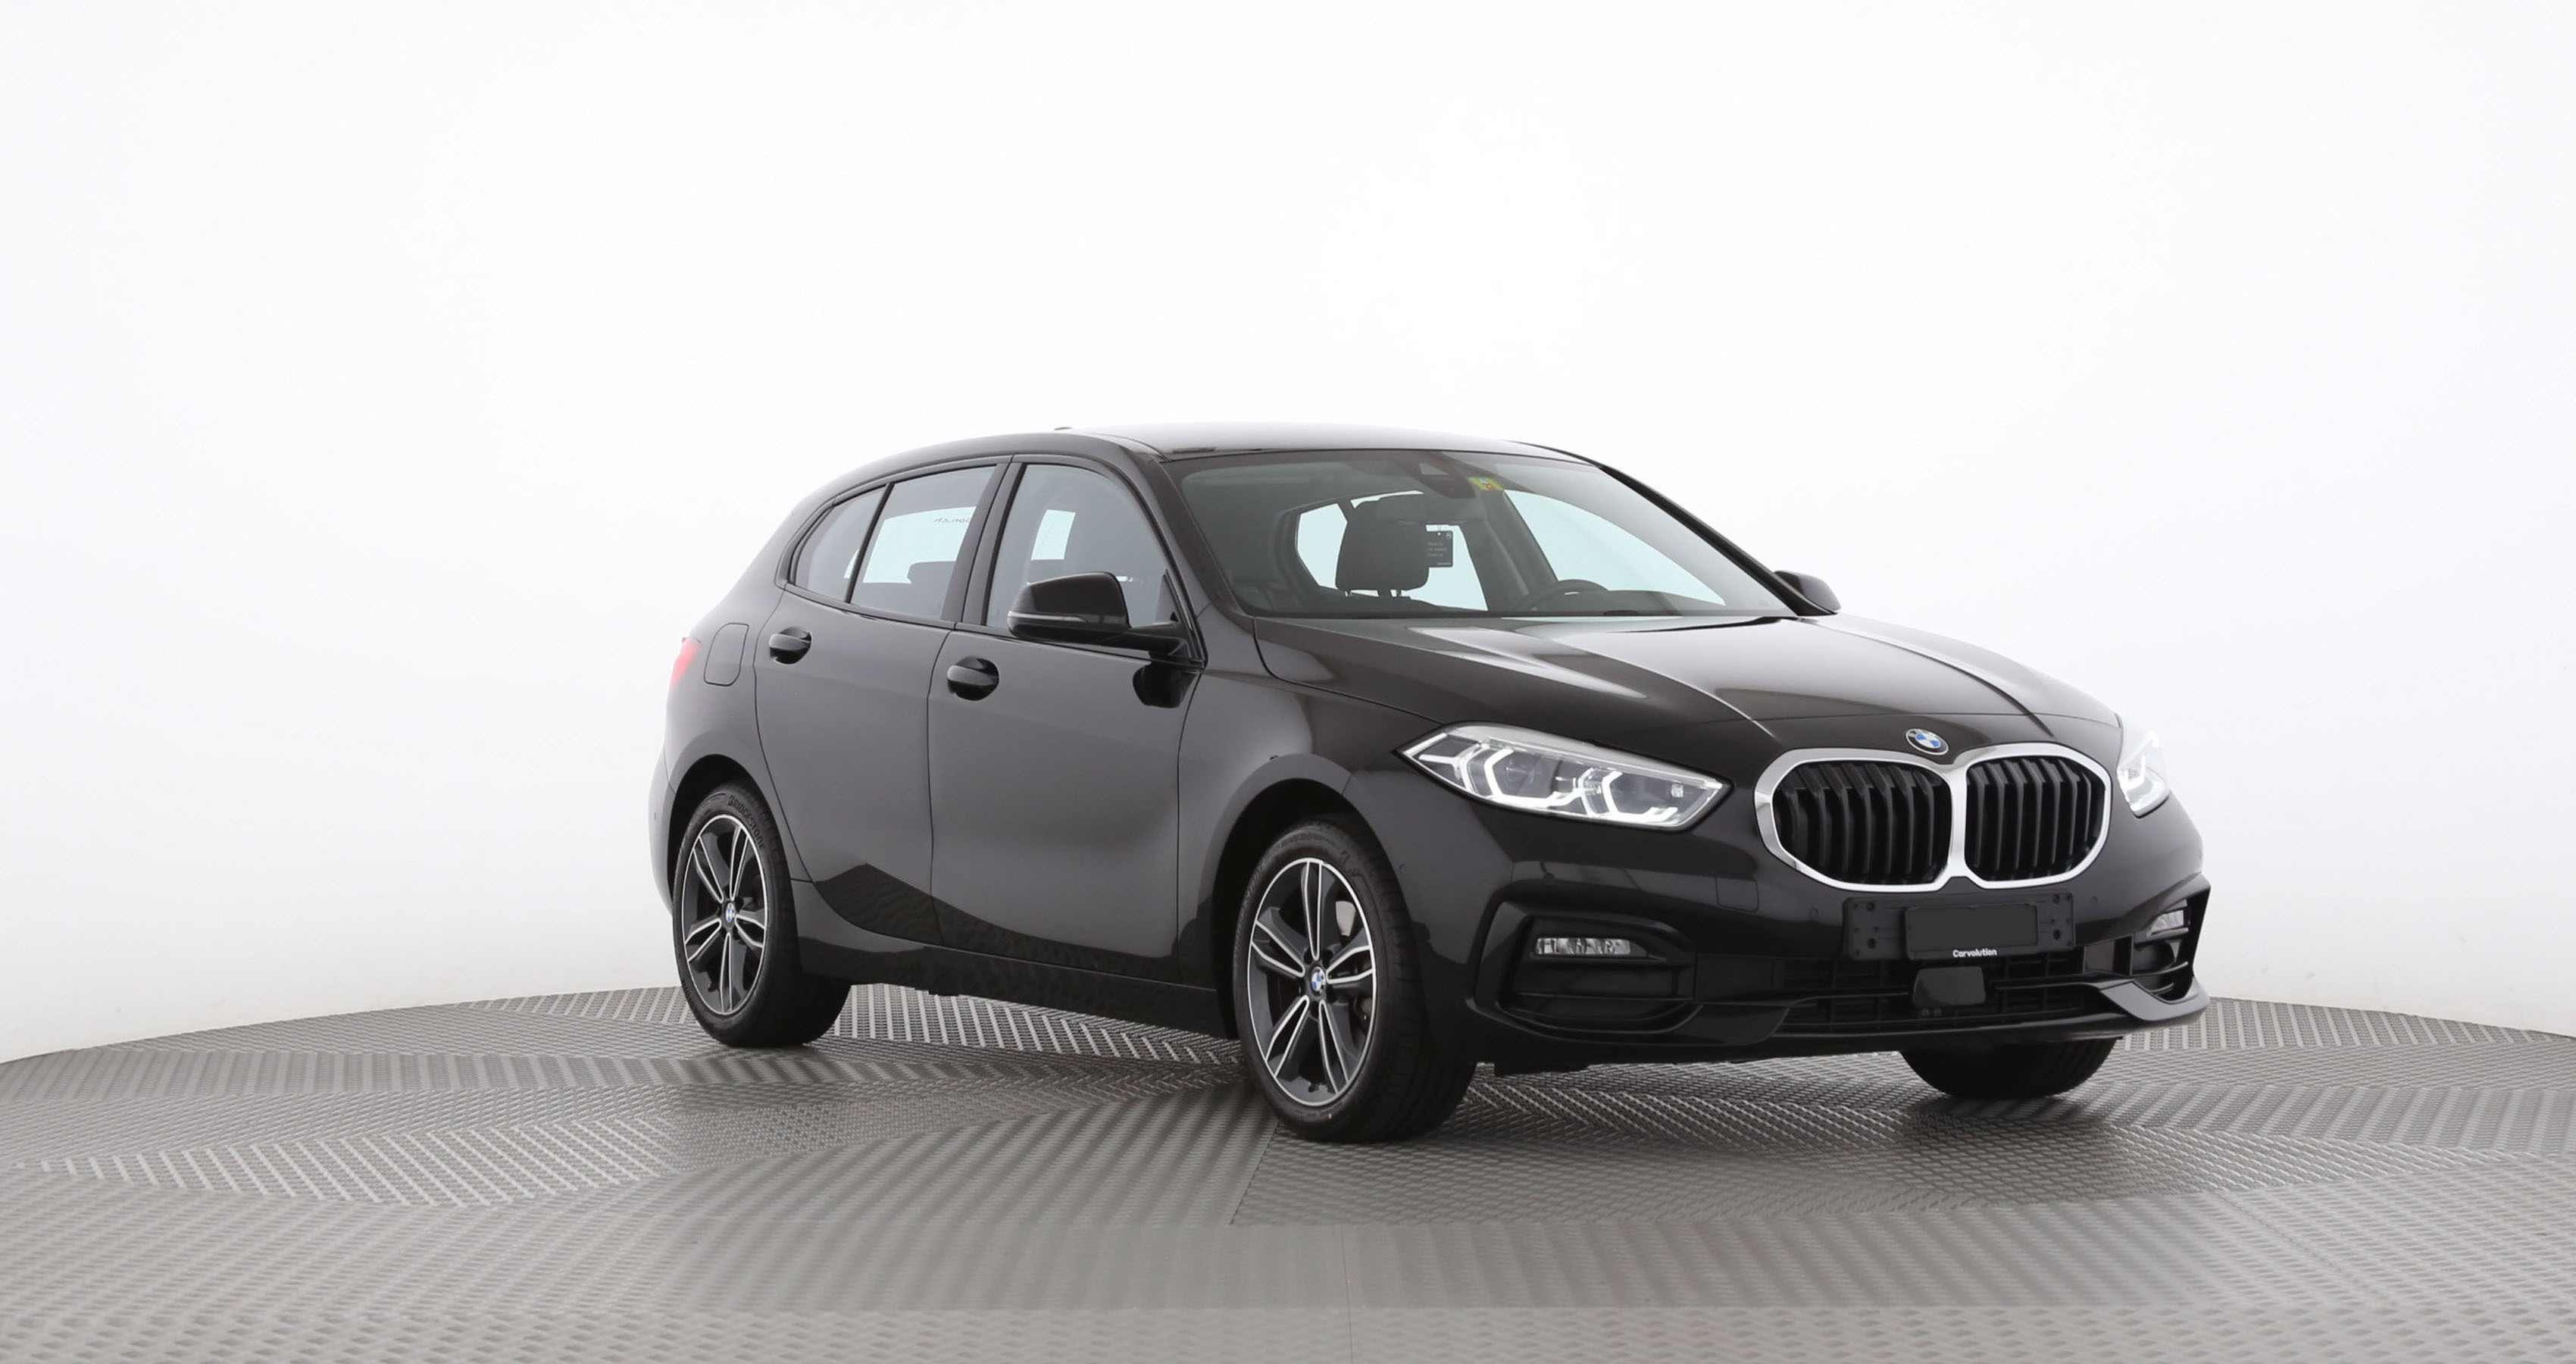 BMW 118i F40, 2020, Test, Review, MotorWoche